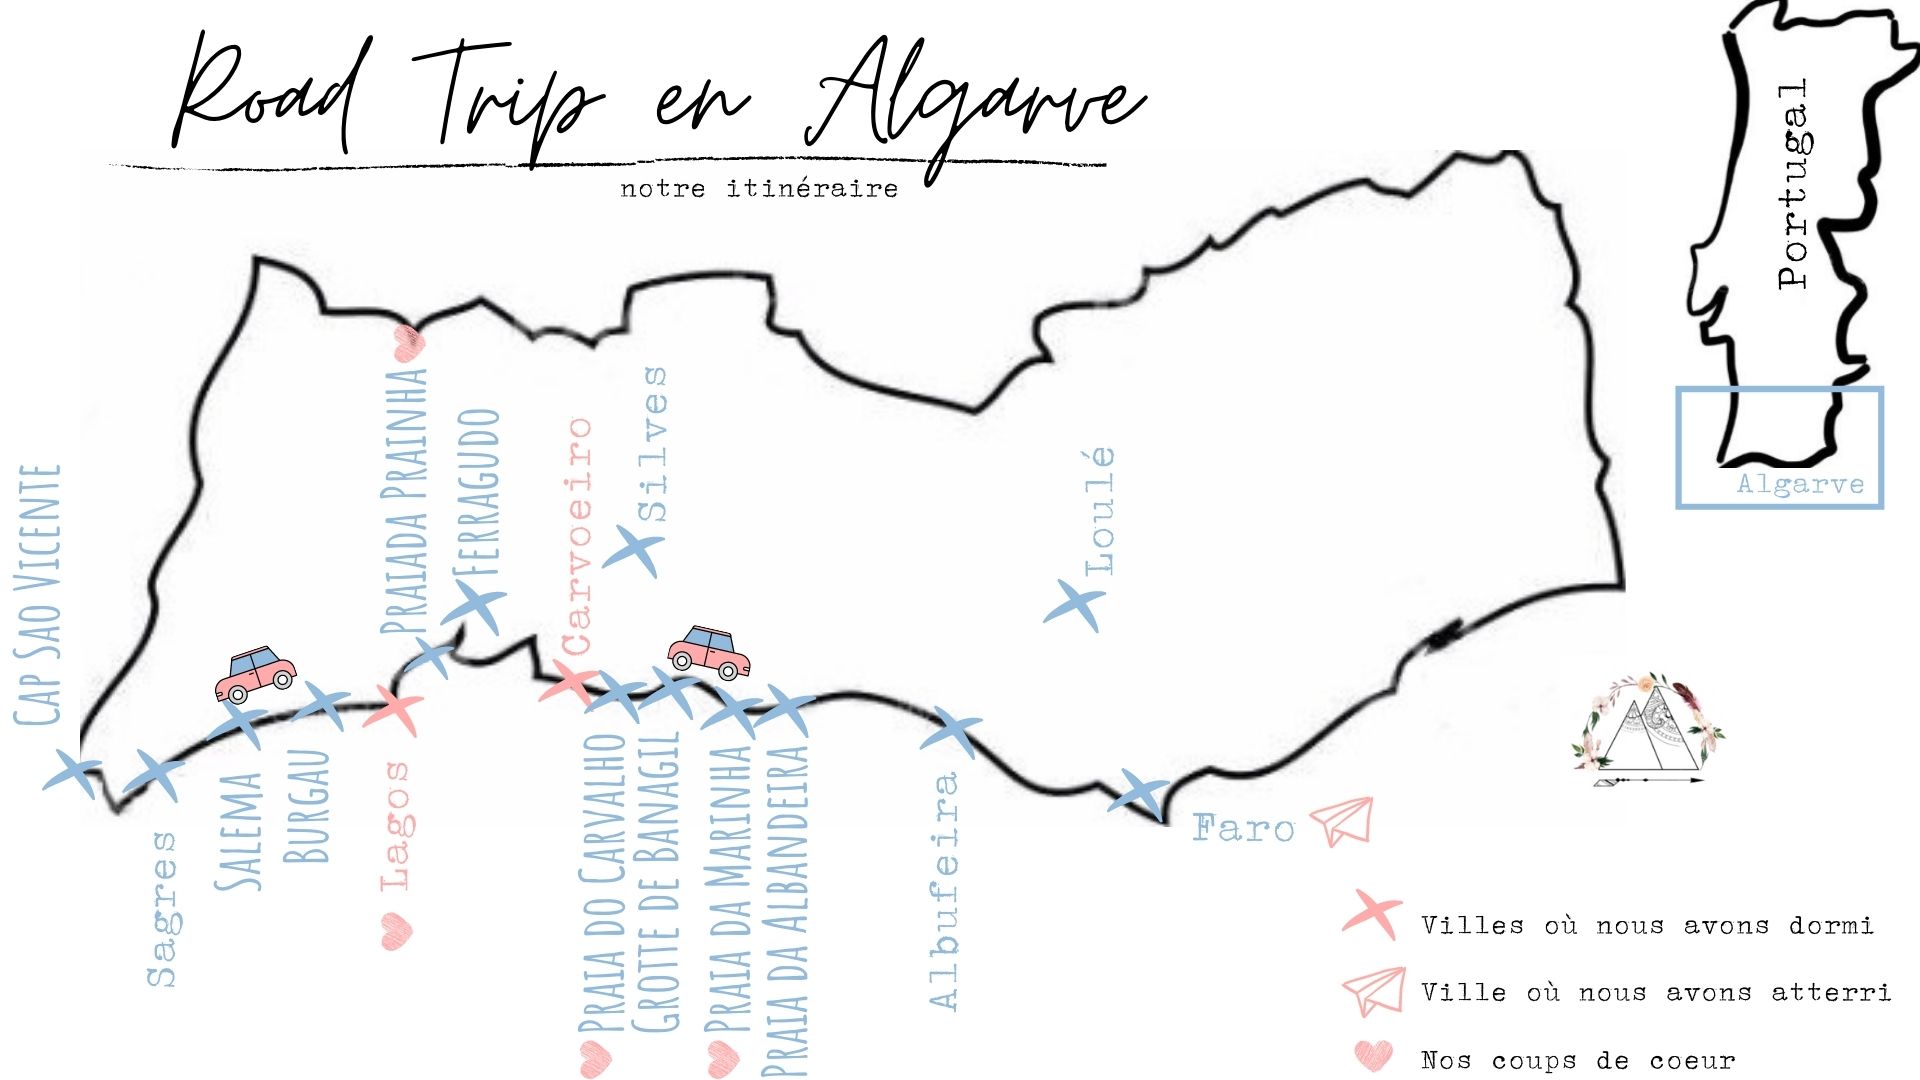 Road Trip en Algarve itinéraire blog voyage